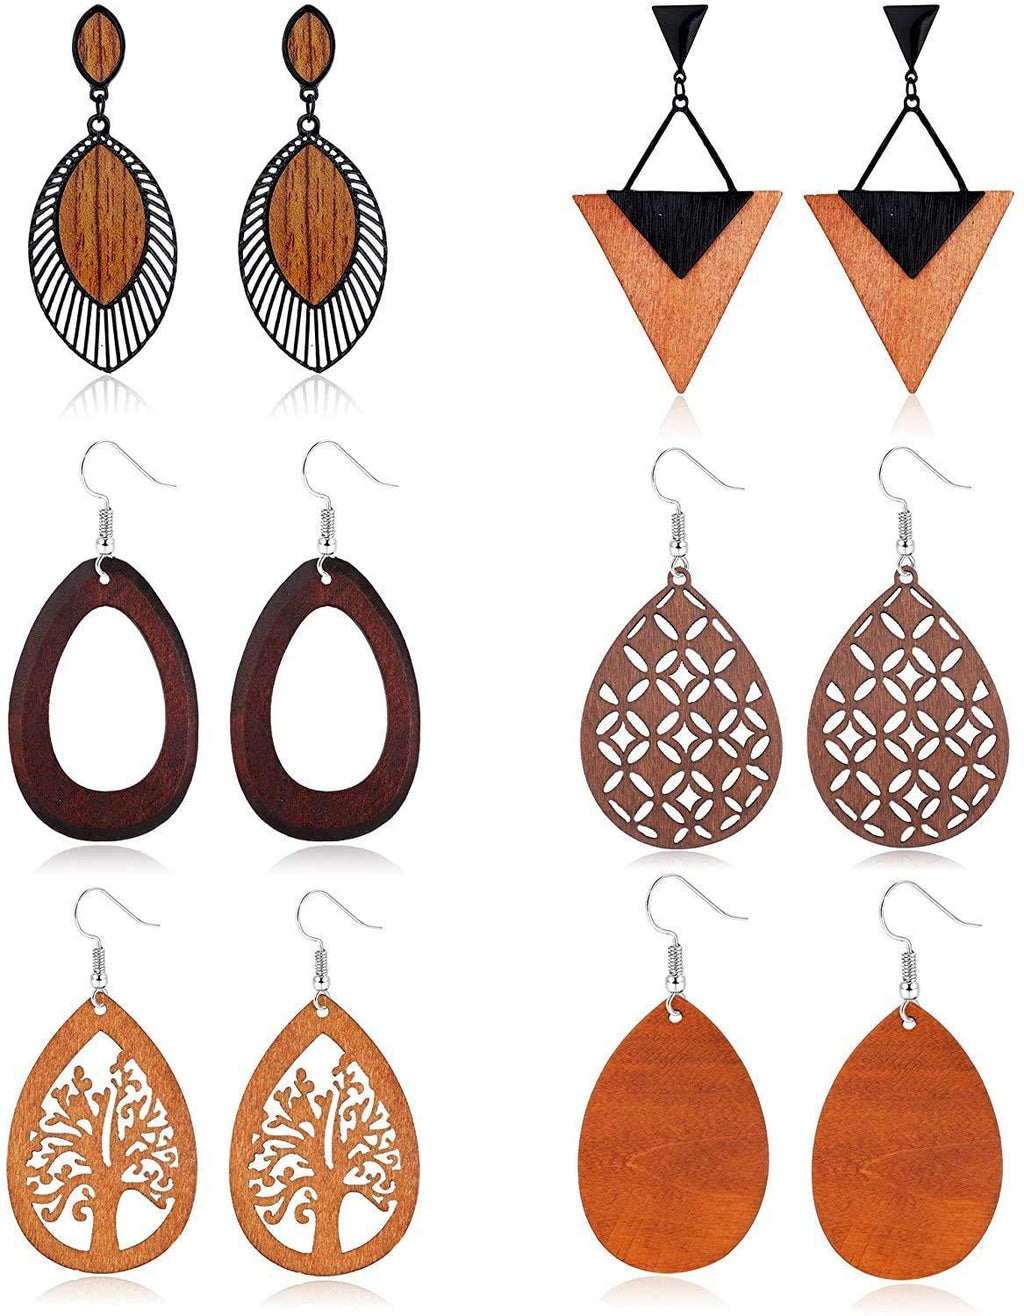 [Australia] - LOLIAS 6Pairs Wooden Dangle Drop Earrings for Women African Earrings Natural Wood Teardrop Dangling Hoop Earrings Ethnic Statement Lightweight Triangle Pendant Leaf Earrings Set 